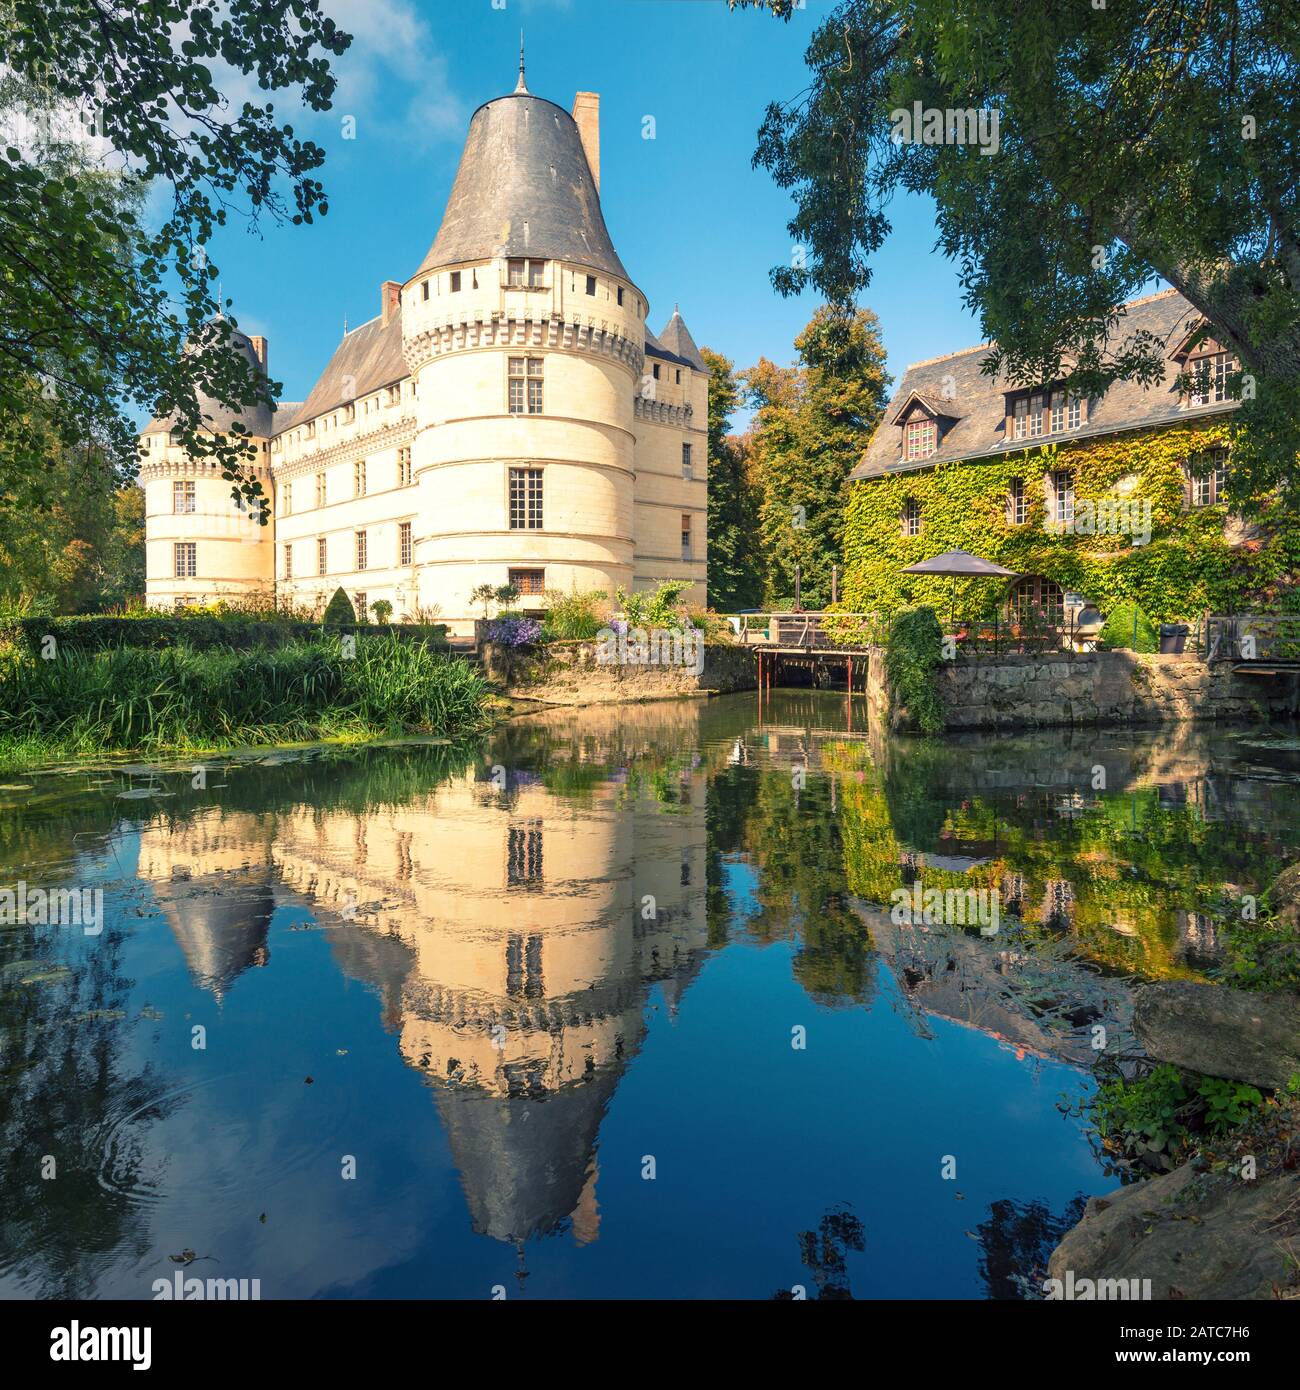 El castillo de l'Islette, Francia. Este castillo renacentista está situado en el valle del Loira, fue construido en el siglo XVI y es una atracción turística. Foto de stock